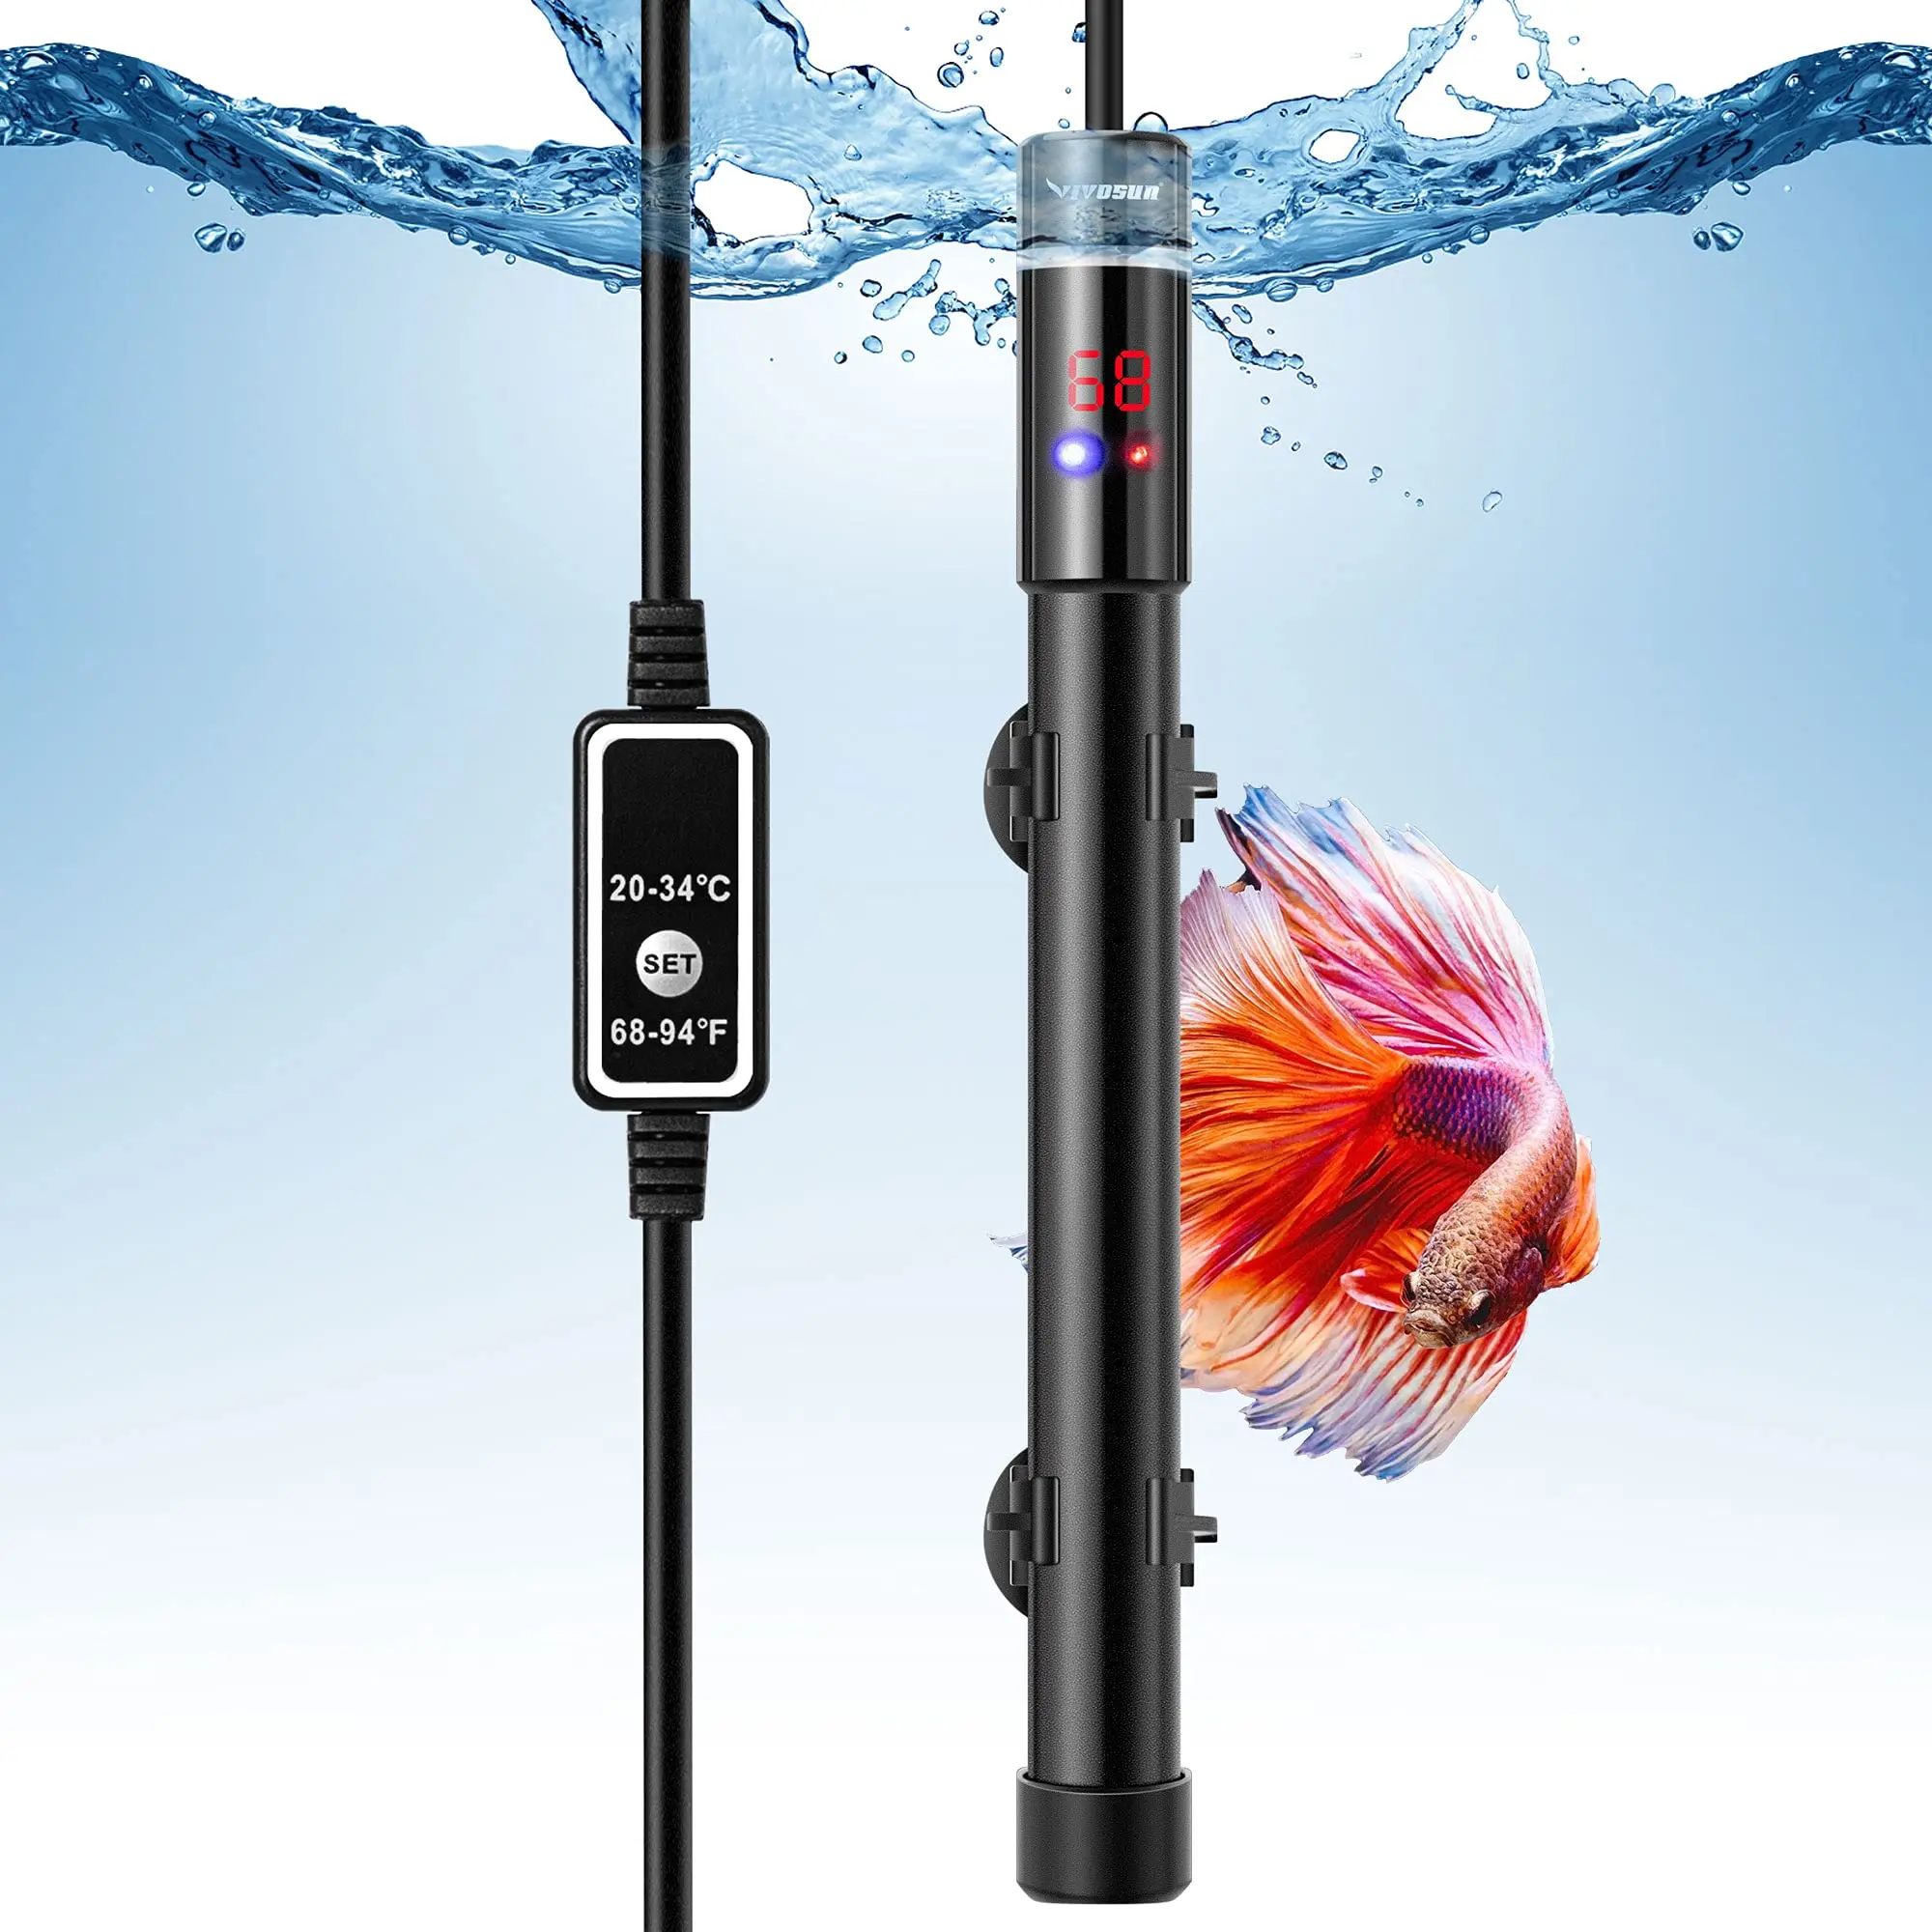 

Precise Aquarium Heater Submersible Titanium Fish Tank Heaters with Intelligent LED External Temperature Display Controller, Black